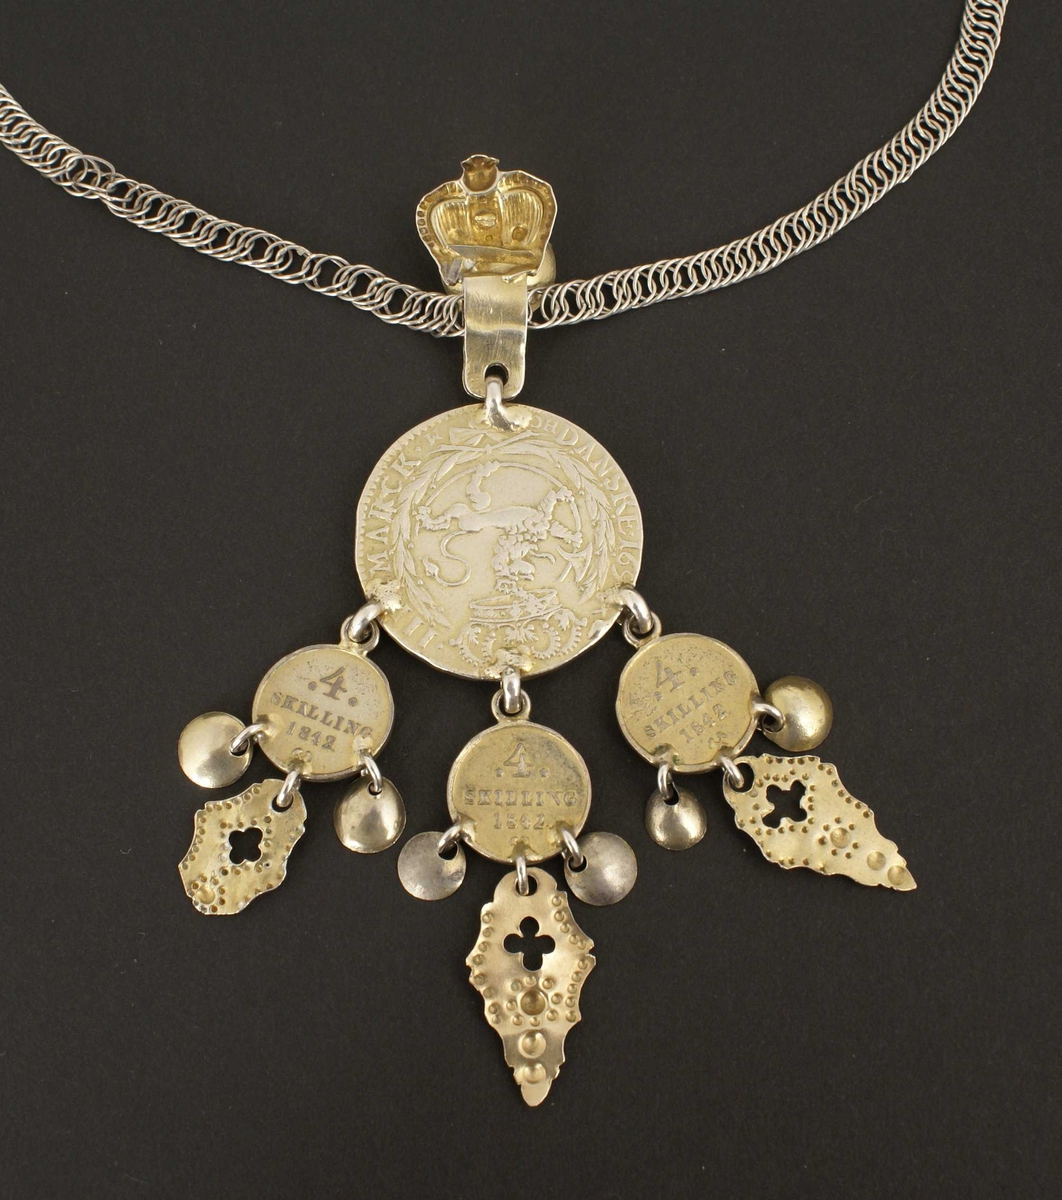 Smykket har langt håndlaget panserkjede i sølv, også kalt flatlenke, og hempe for anheng med krone og lauv.